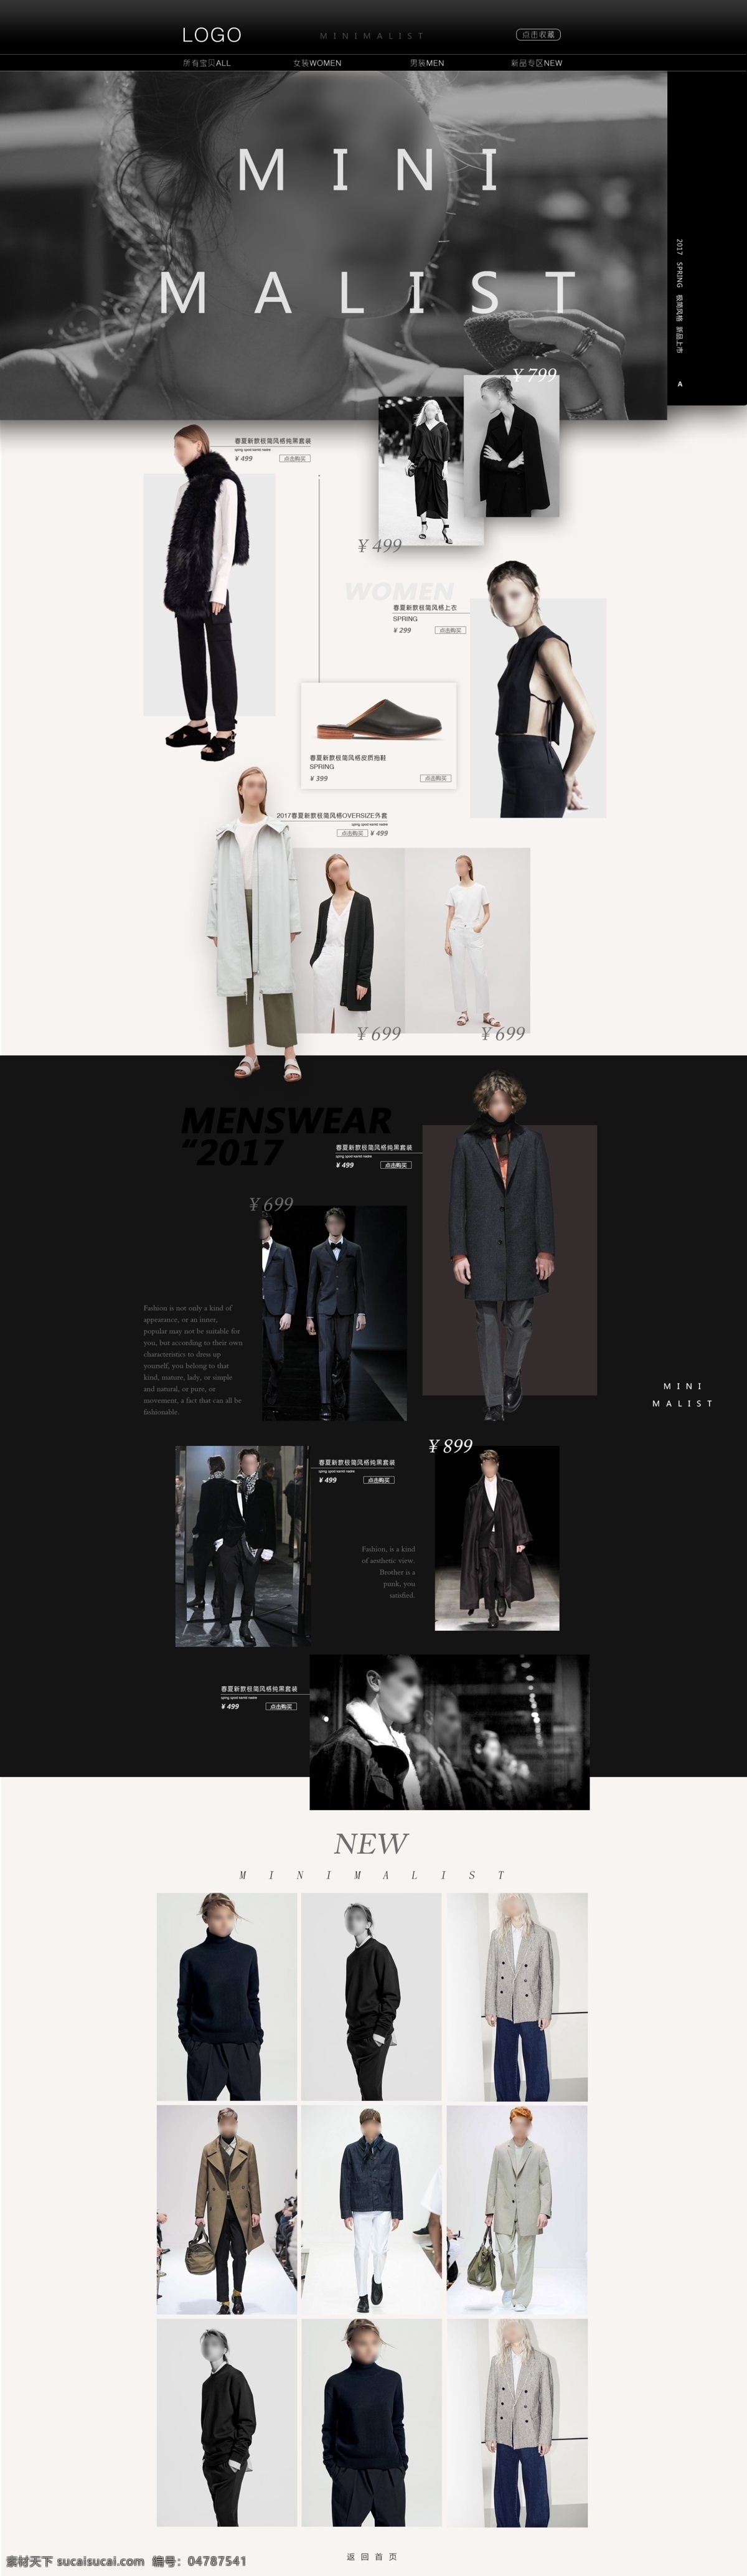 时尚服装 电商 网站 色彩搭配 字体设计 图片排版 文案策划 简约时尚